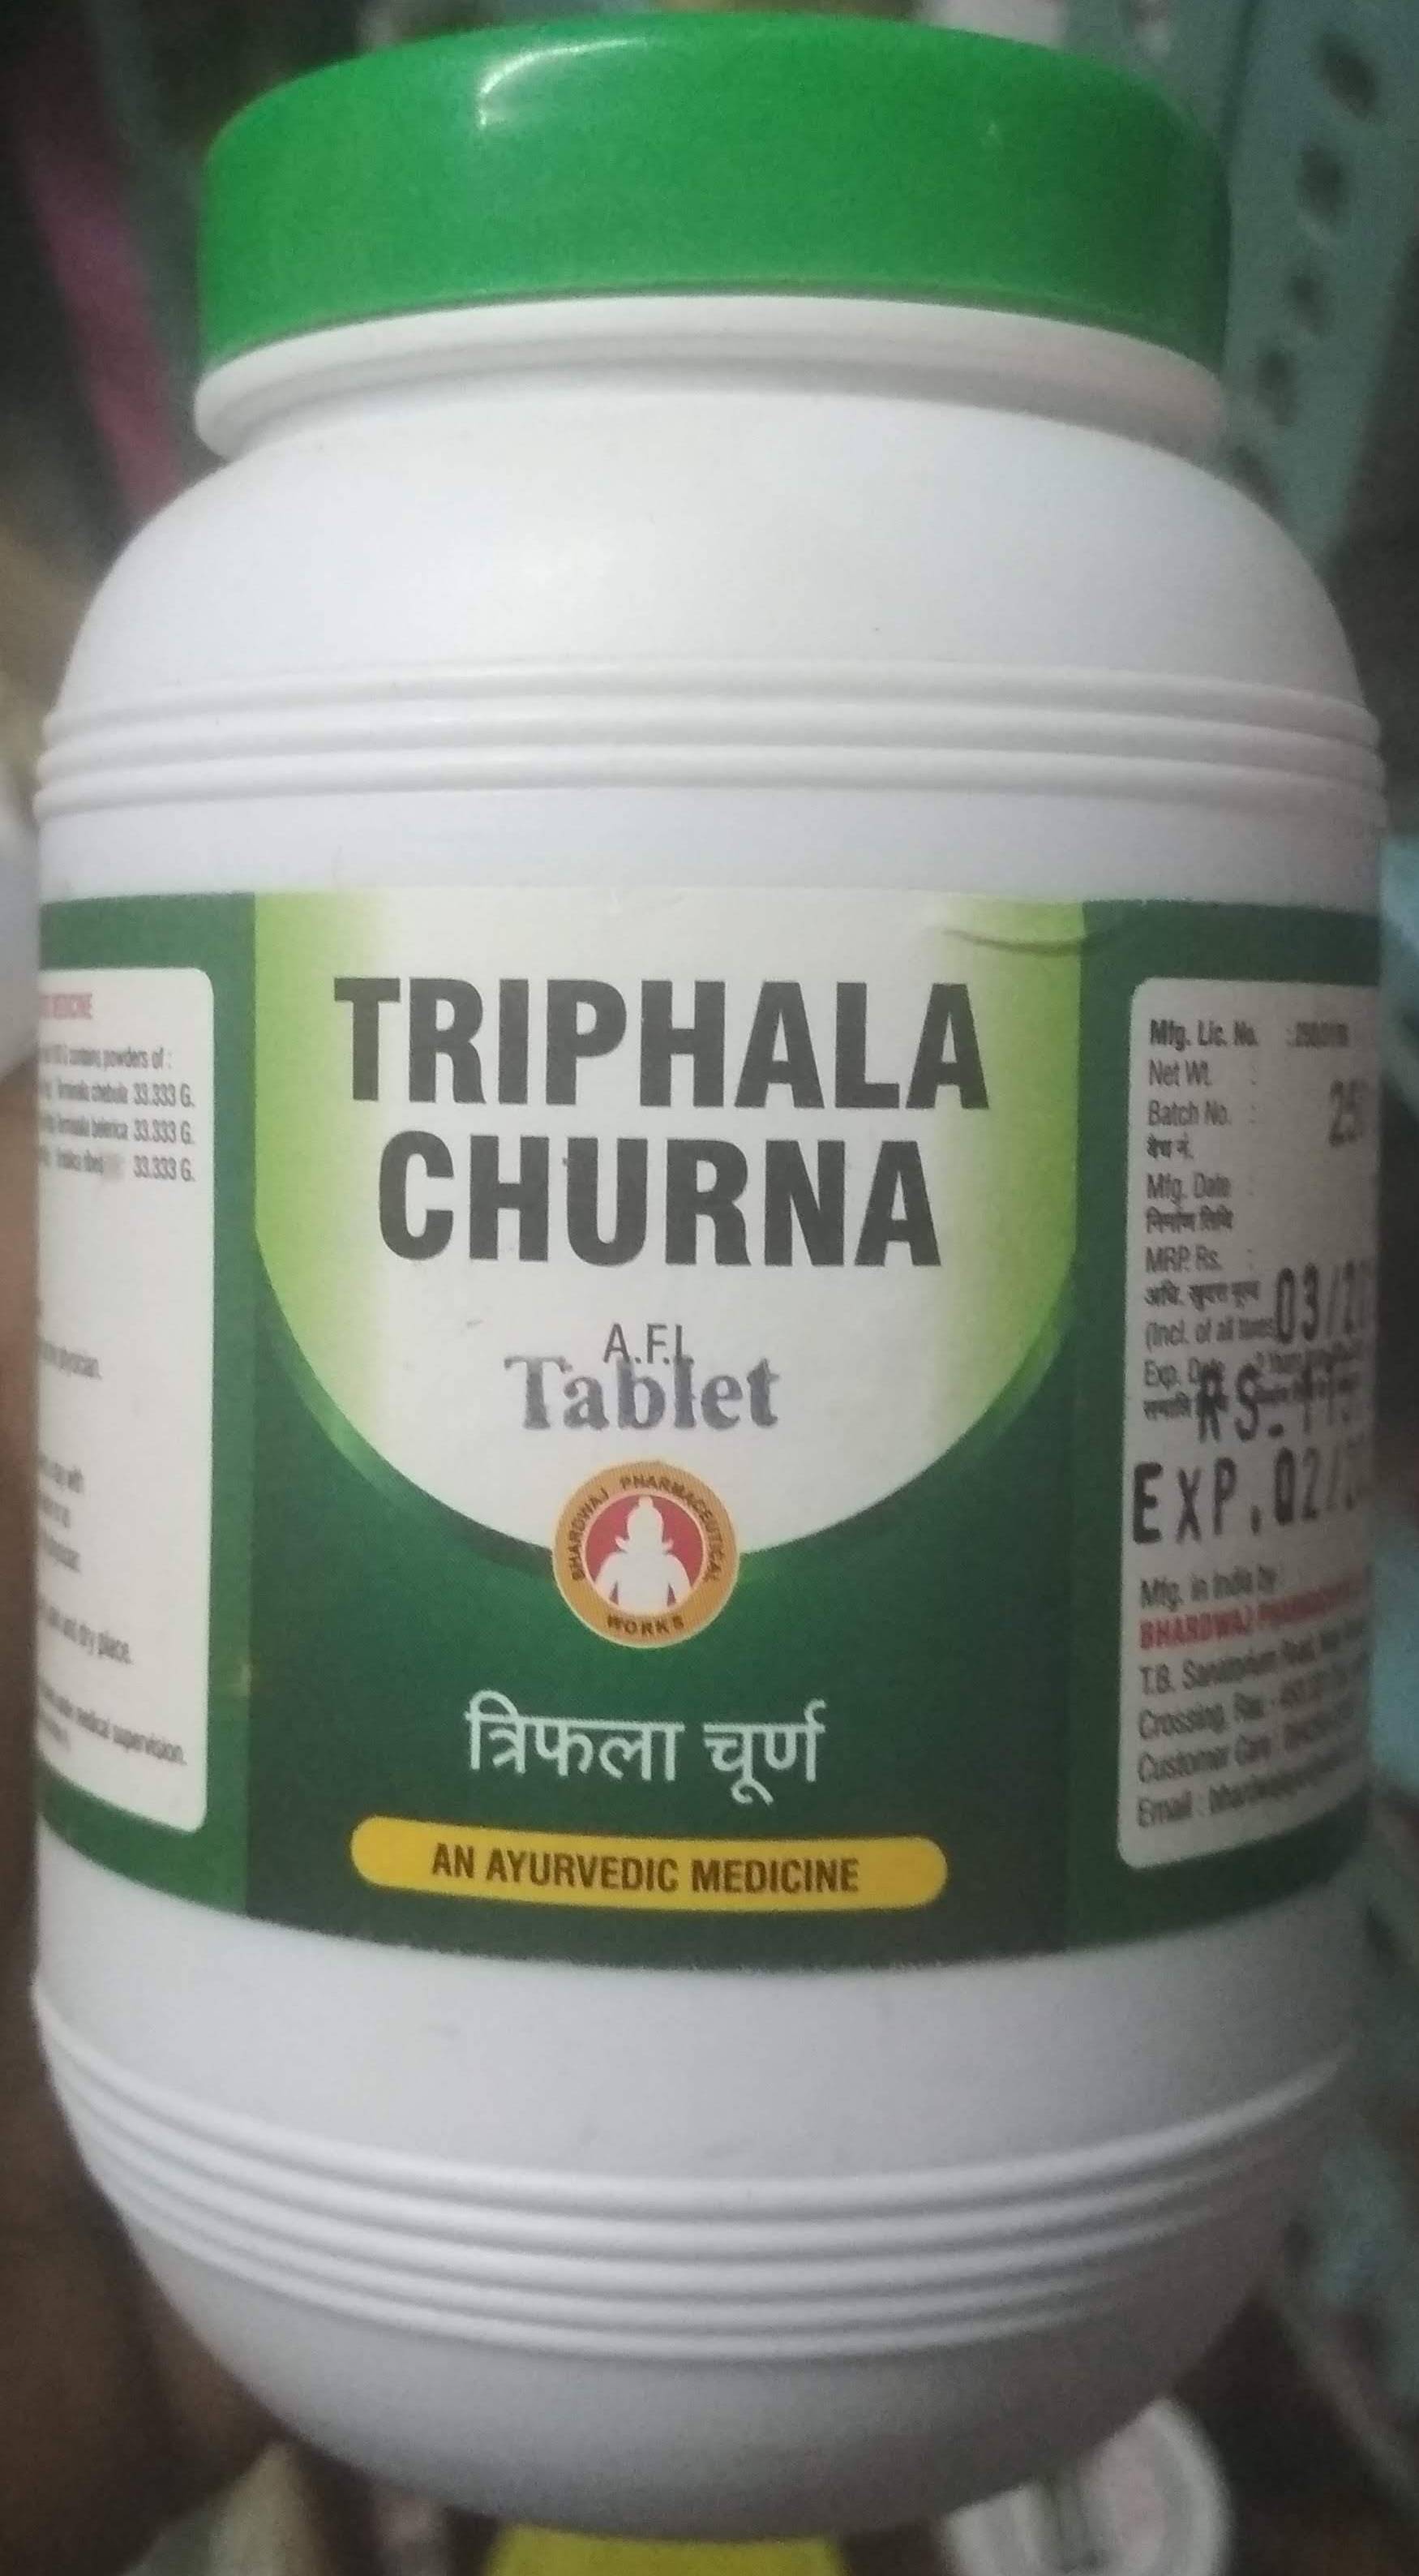 triphala churna 1 kg upto 20% off Bharadwaj Pharmaceuticals Indore